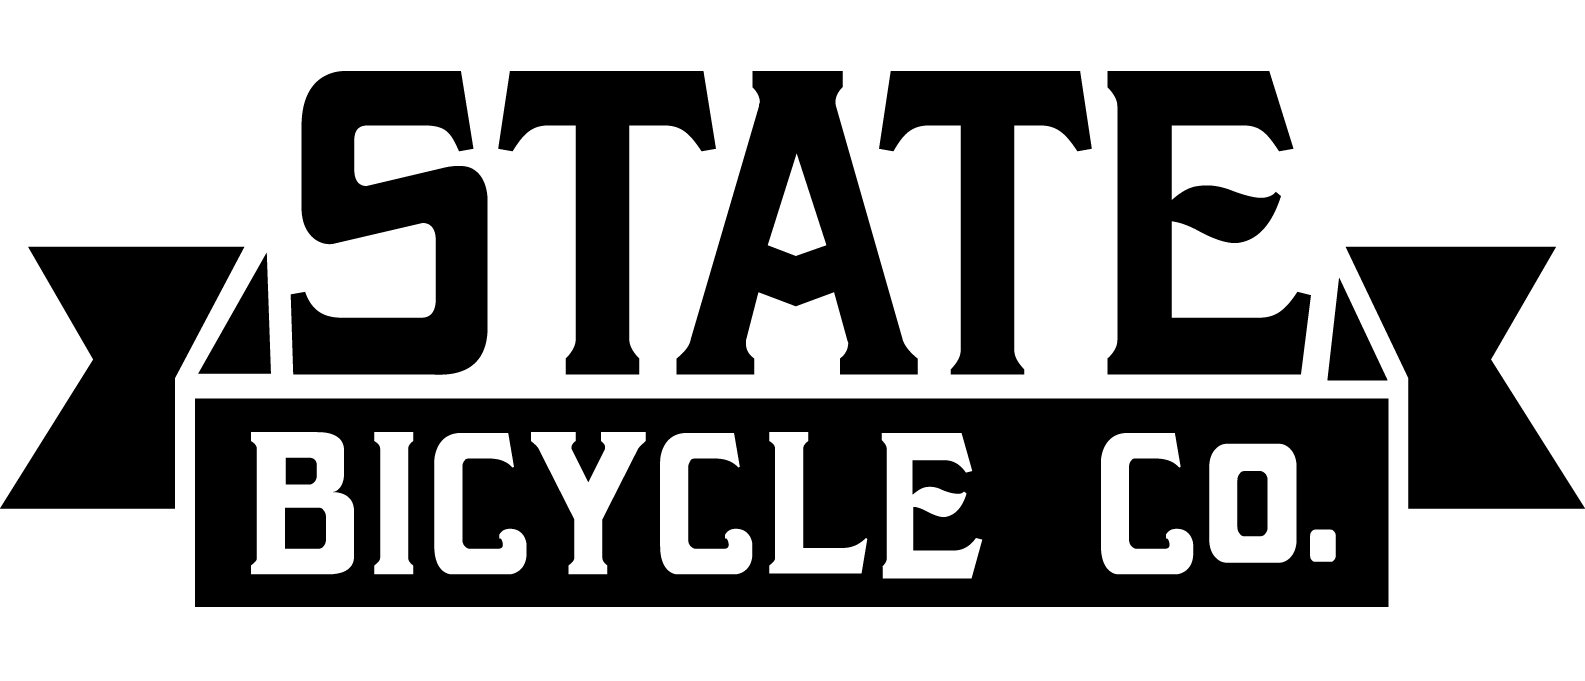 state-logo-black.png